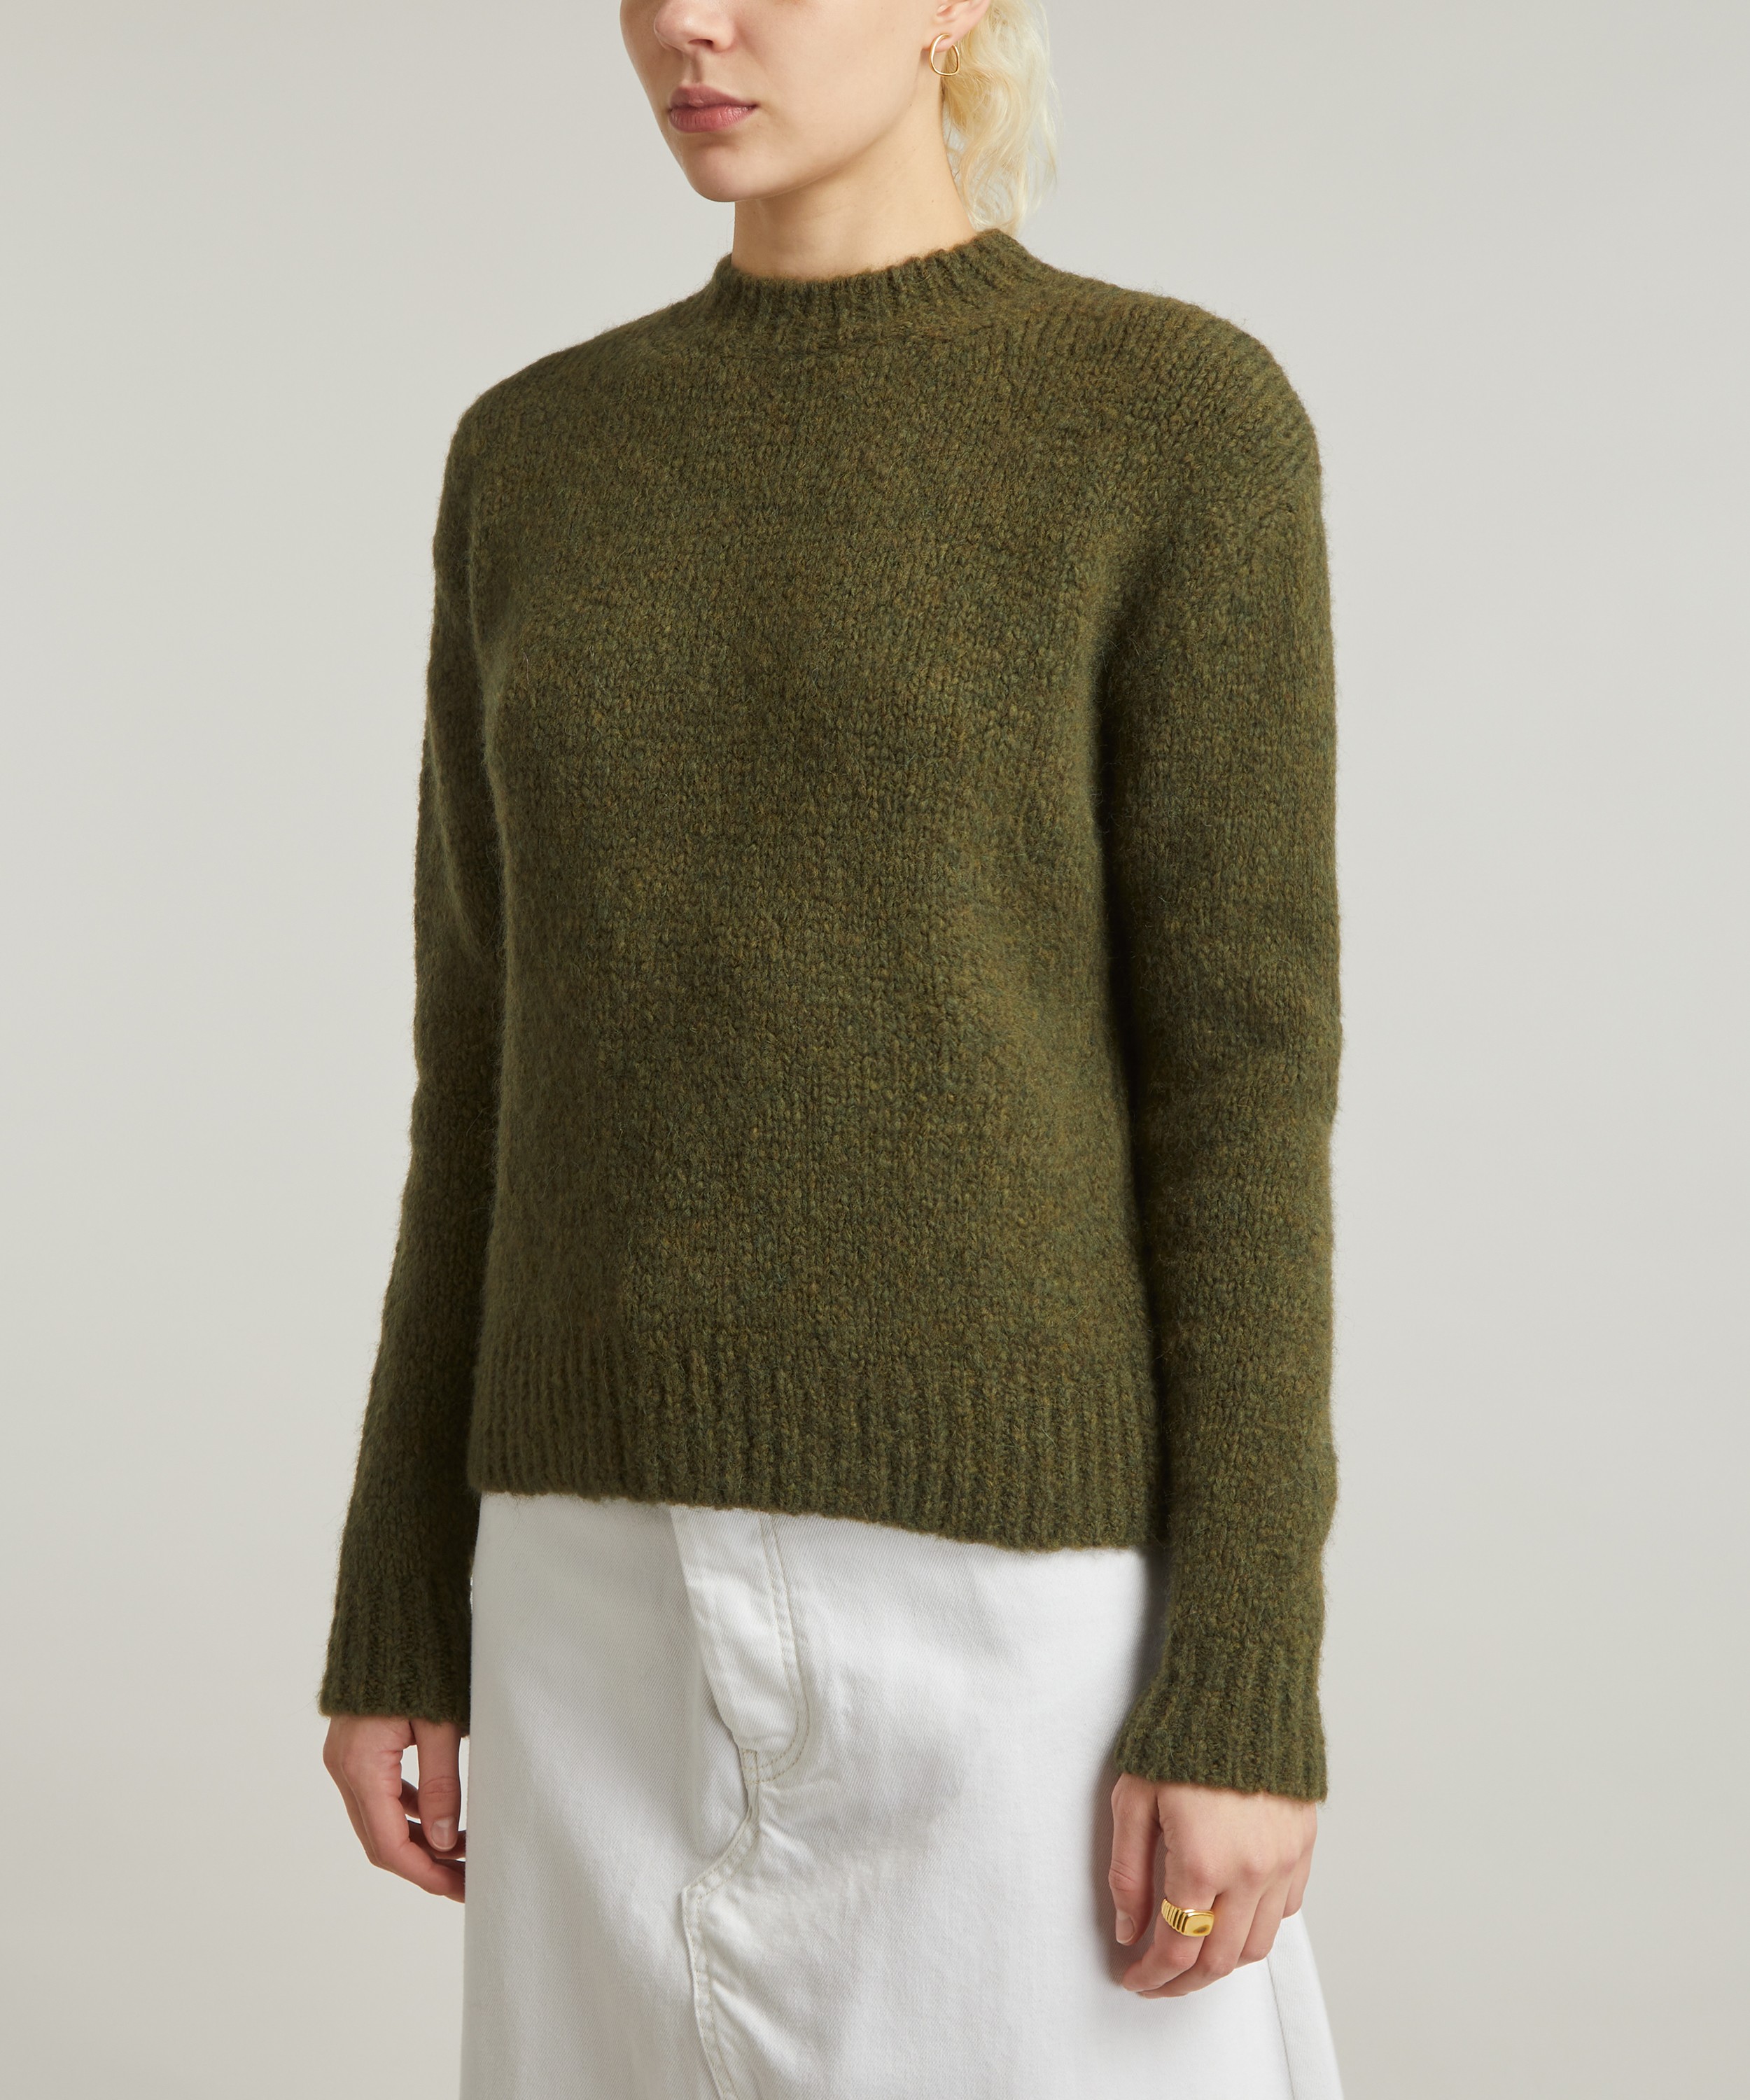 Paloma Wool 1 Besito Knitted Jumper | Liberty